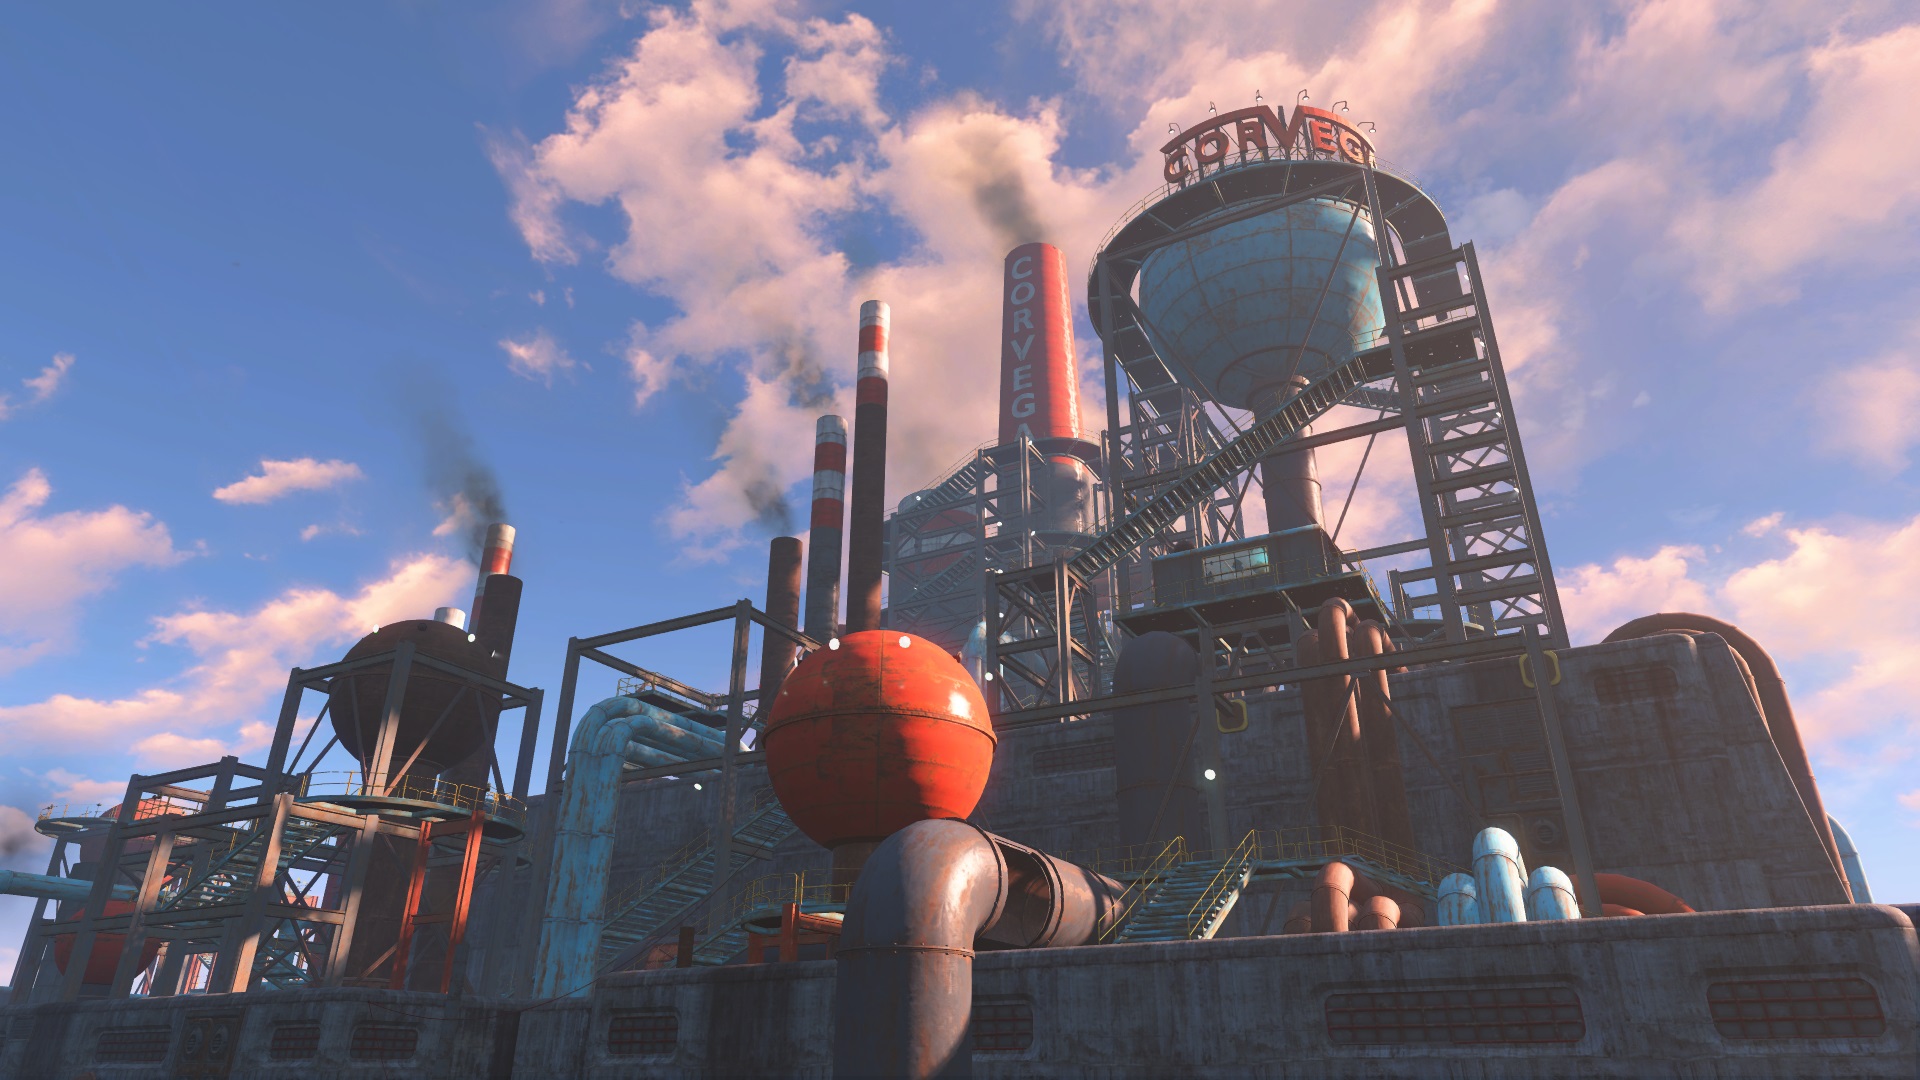 Corvega assembly plant) - локация Fallout 4. Локация находится в южной част...